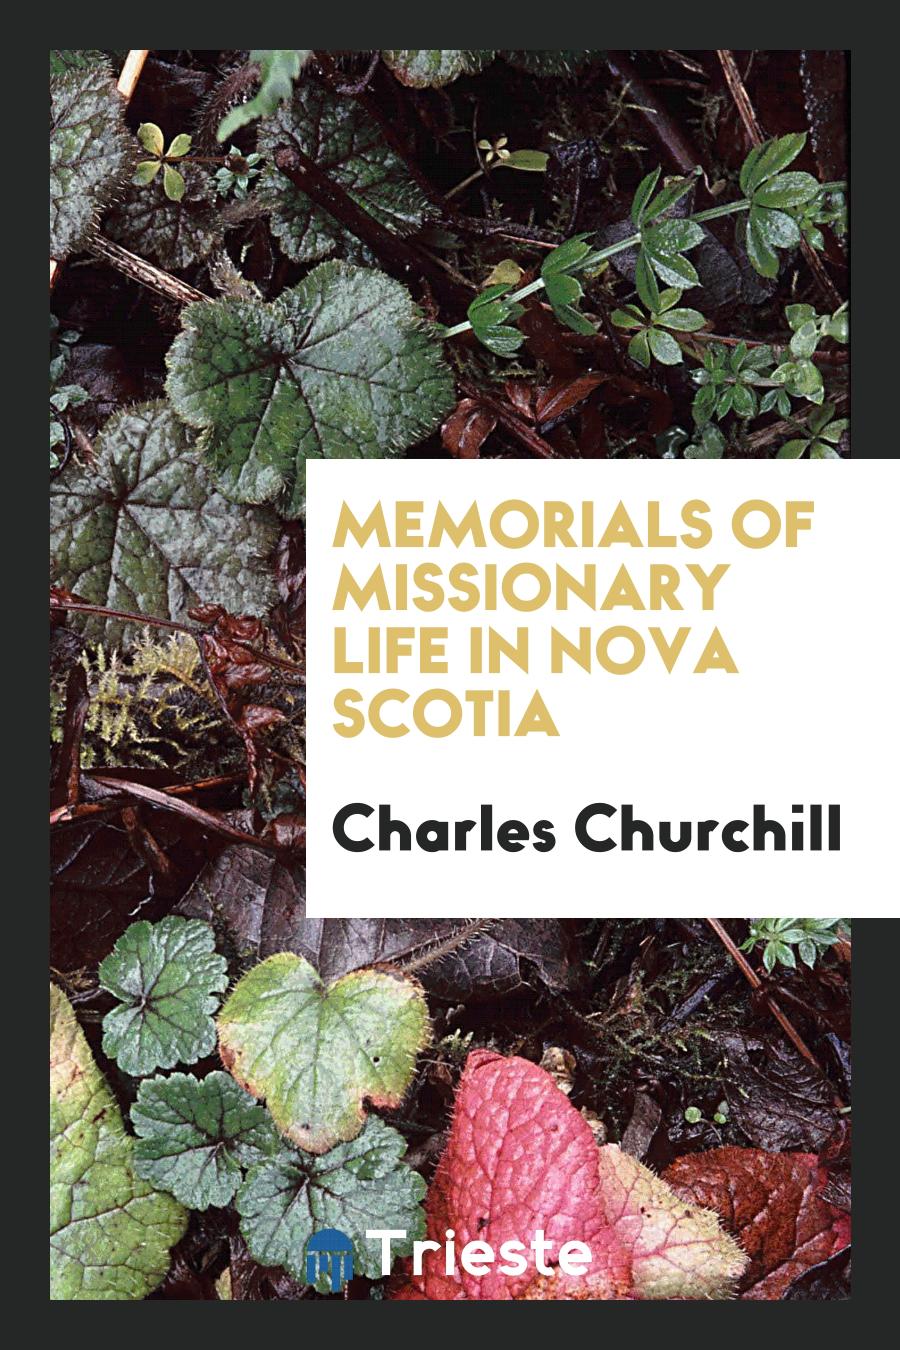 Memorials of missionary life in Nova Scotia